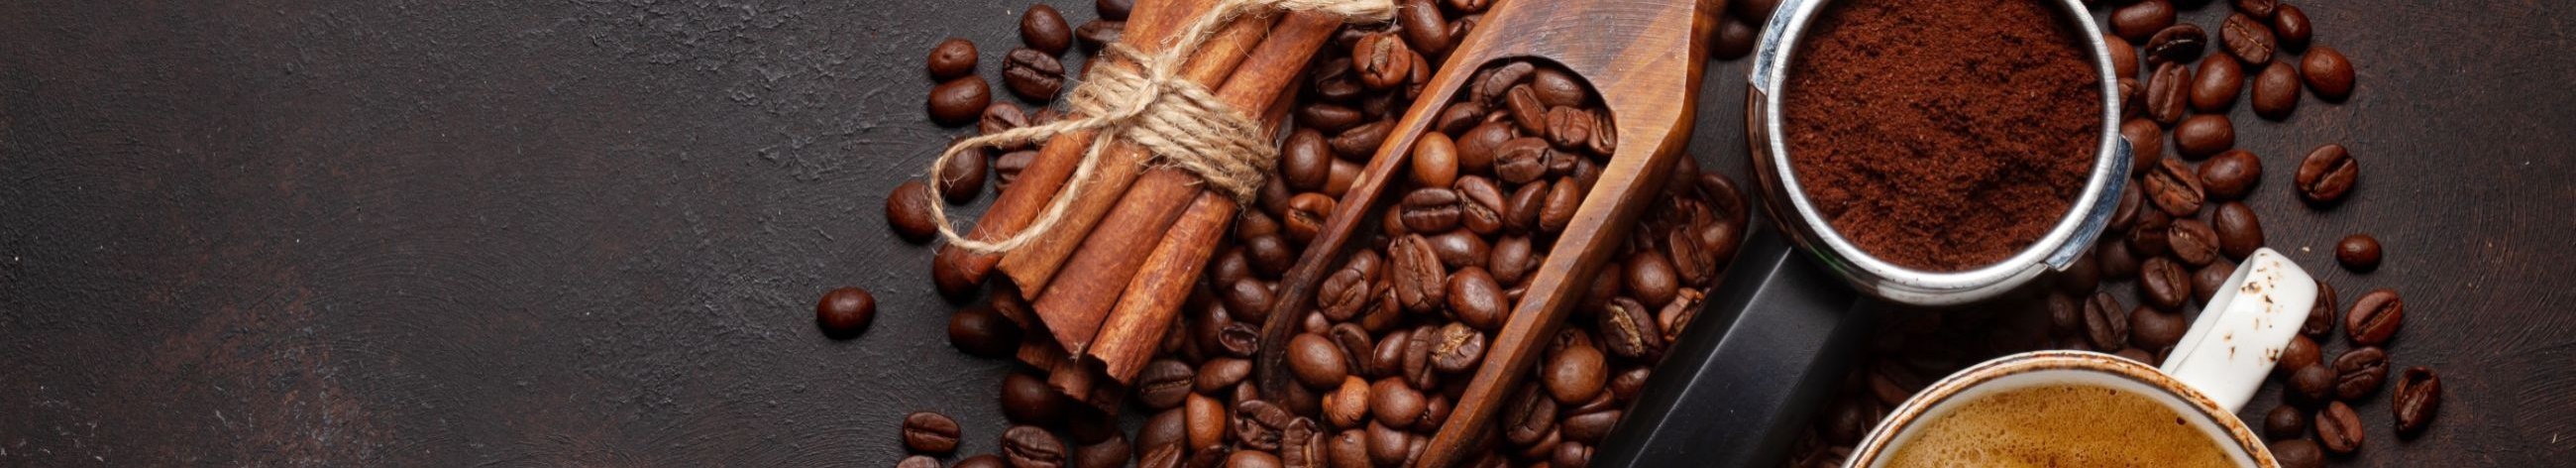 Oleme Eesti juhtiv espressoettevõte, pakkudes kvaliteetseid kohvitooteid ja -lahendusi HORECA sektorile, kontoritele ja üritustele.